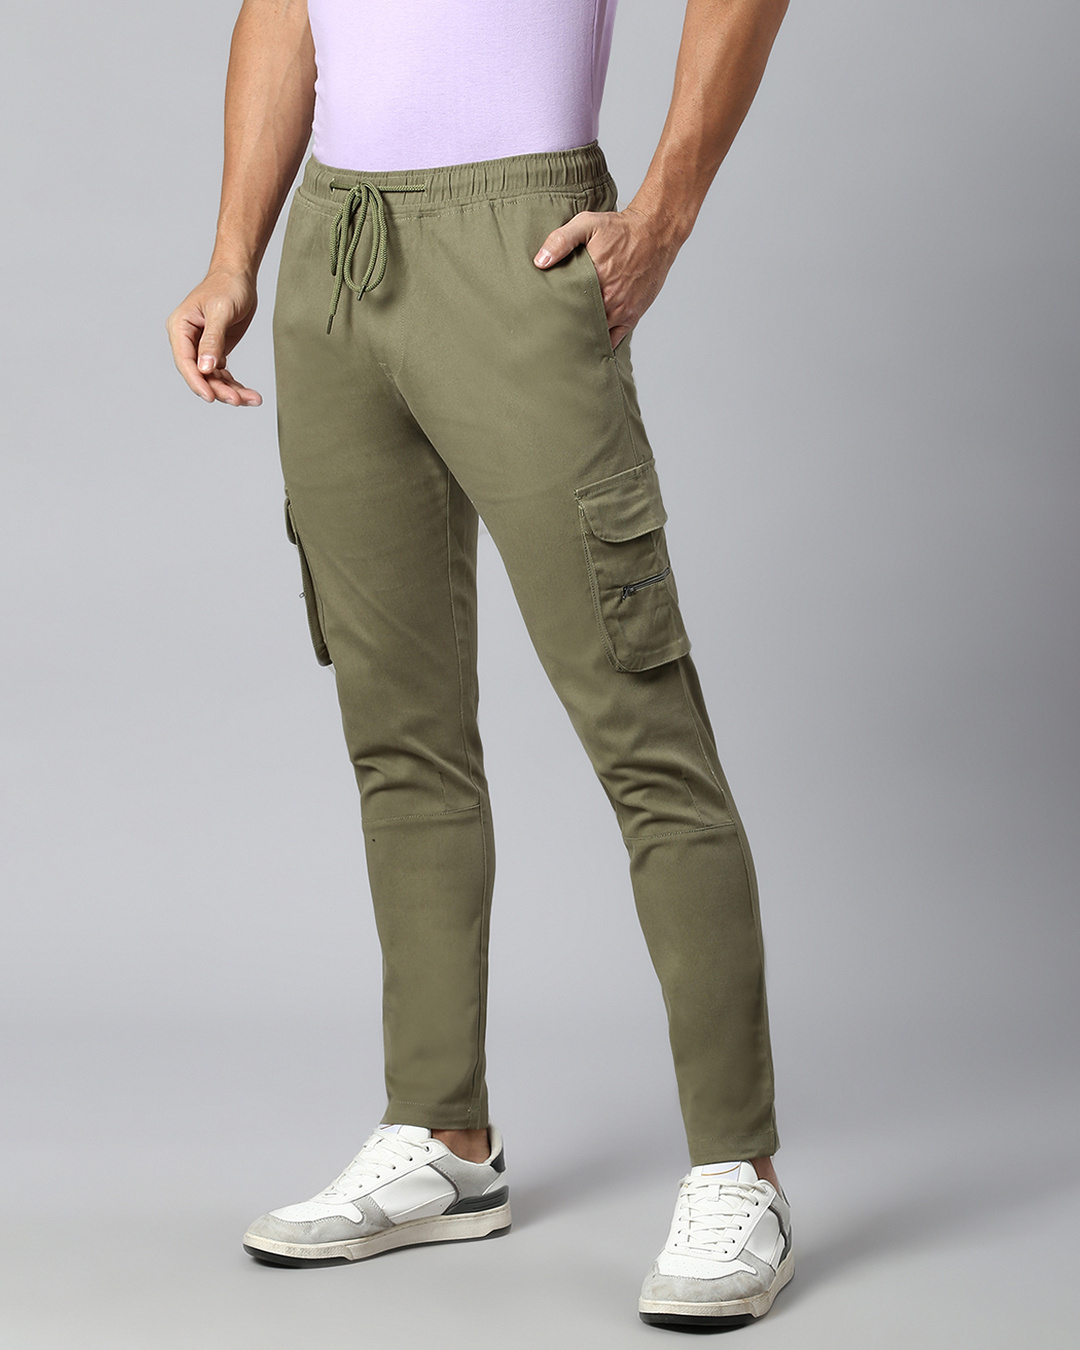 Buy Men's Green Cargo Trousers Online at Bewakoof